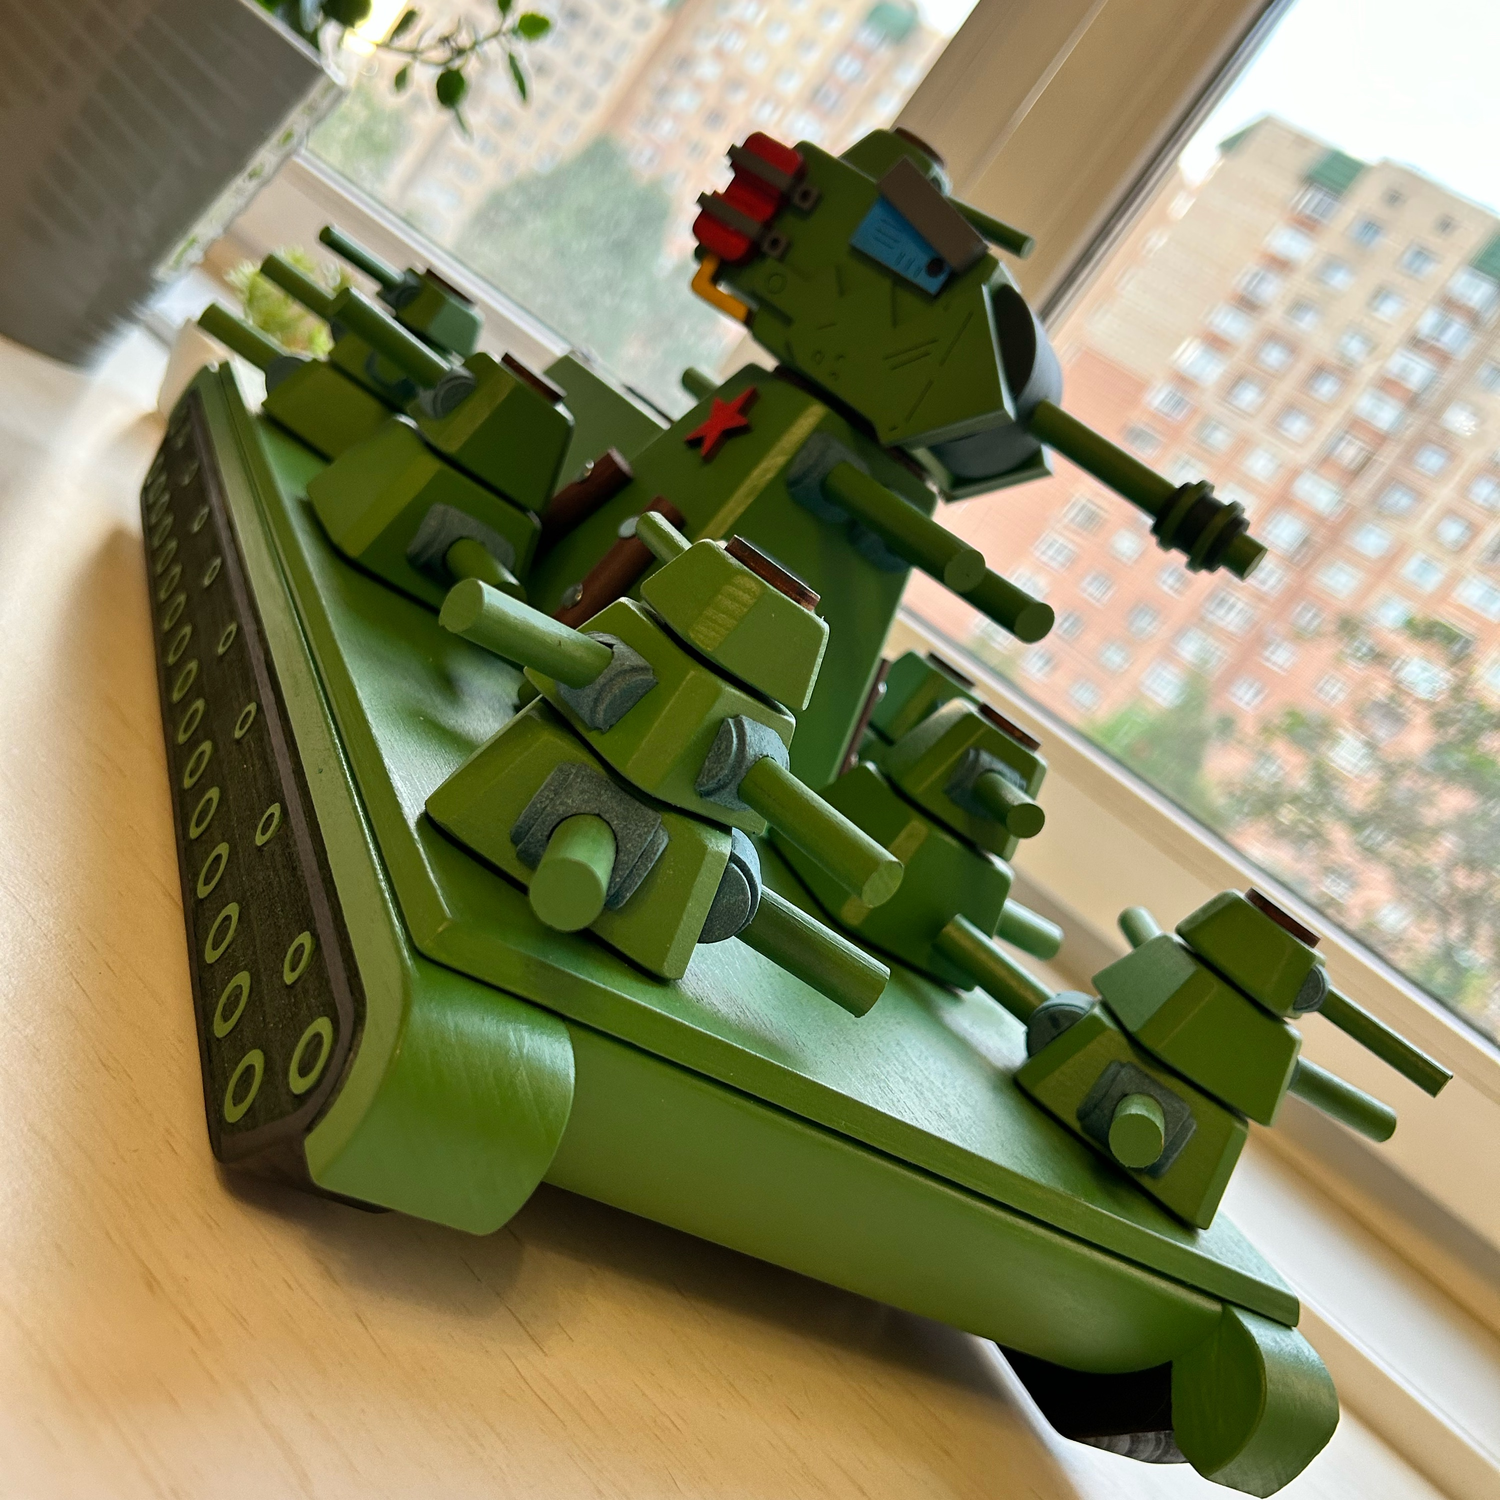 Photo №1 к отзыву покупателя Stepanenko Anna о товаре Техника и роботы: Танк КВ 45 игрушка из дерева